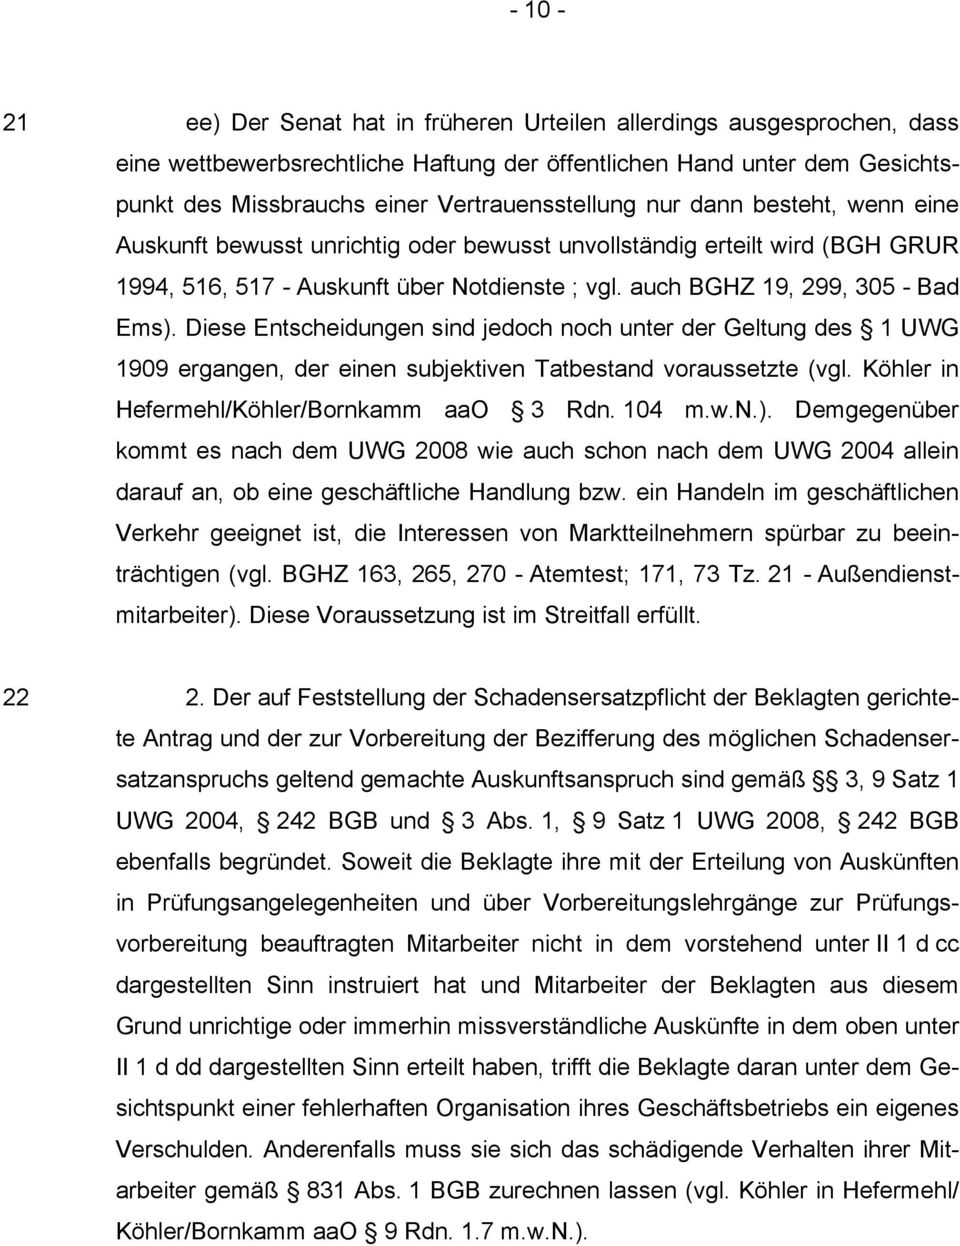 Diese Entscheidungen sind jedoch noch unter der Geltung des 1 UWG 1909 ergangen, der einen subjektiven Tatbestand voraussetzte (vgl. Köhler in Hefermehl/Köhler/Bornkamm aao 3 Rdn. 104 m.w.n.).